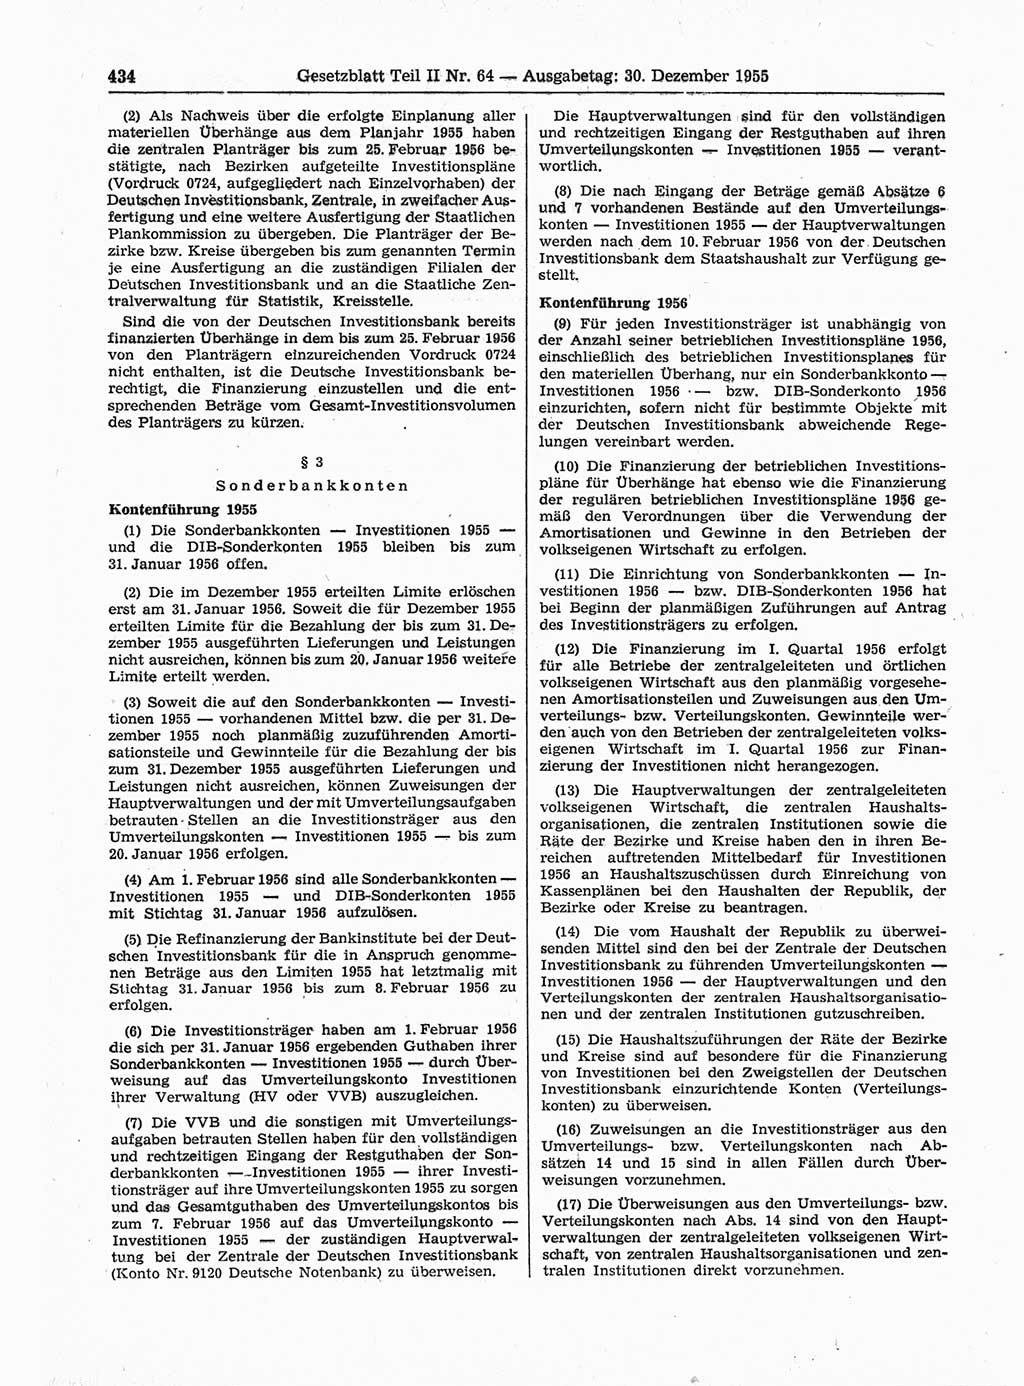 Gesetzblatt (GBl.) der Deutschen Demokratischen Republik (DDR) Teil ⅠⅠ 1955, Seite 434 (GBl. DDR ⅠⅠ 1955, S. 434)